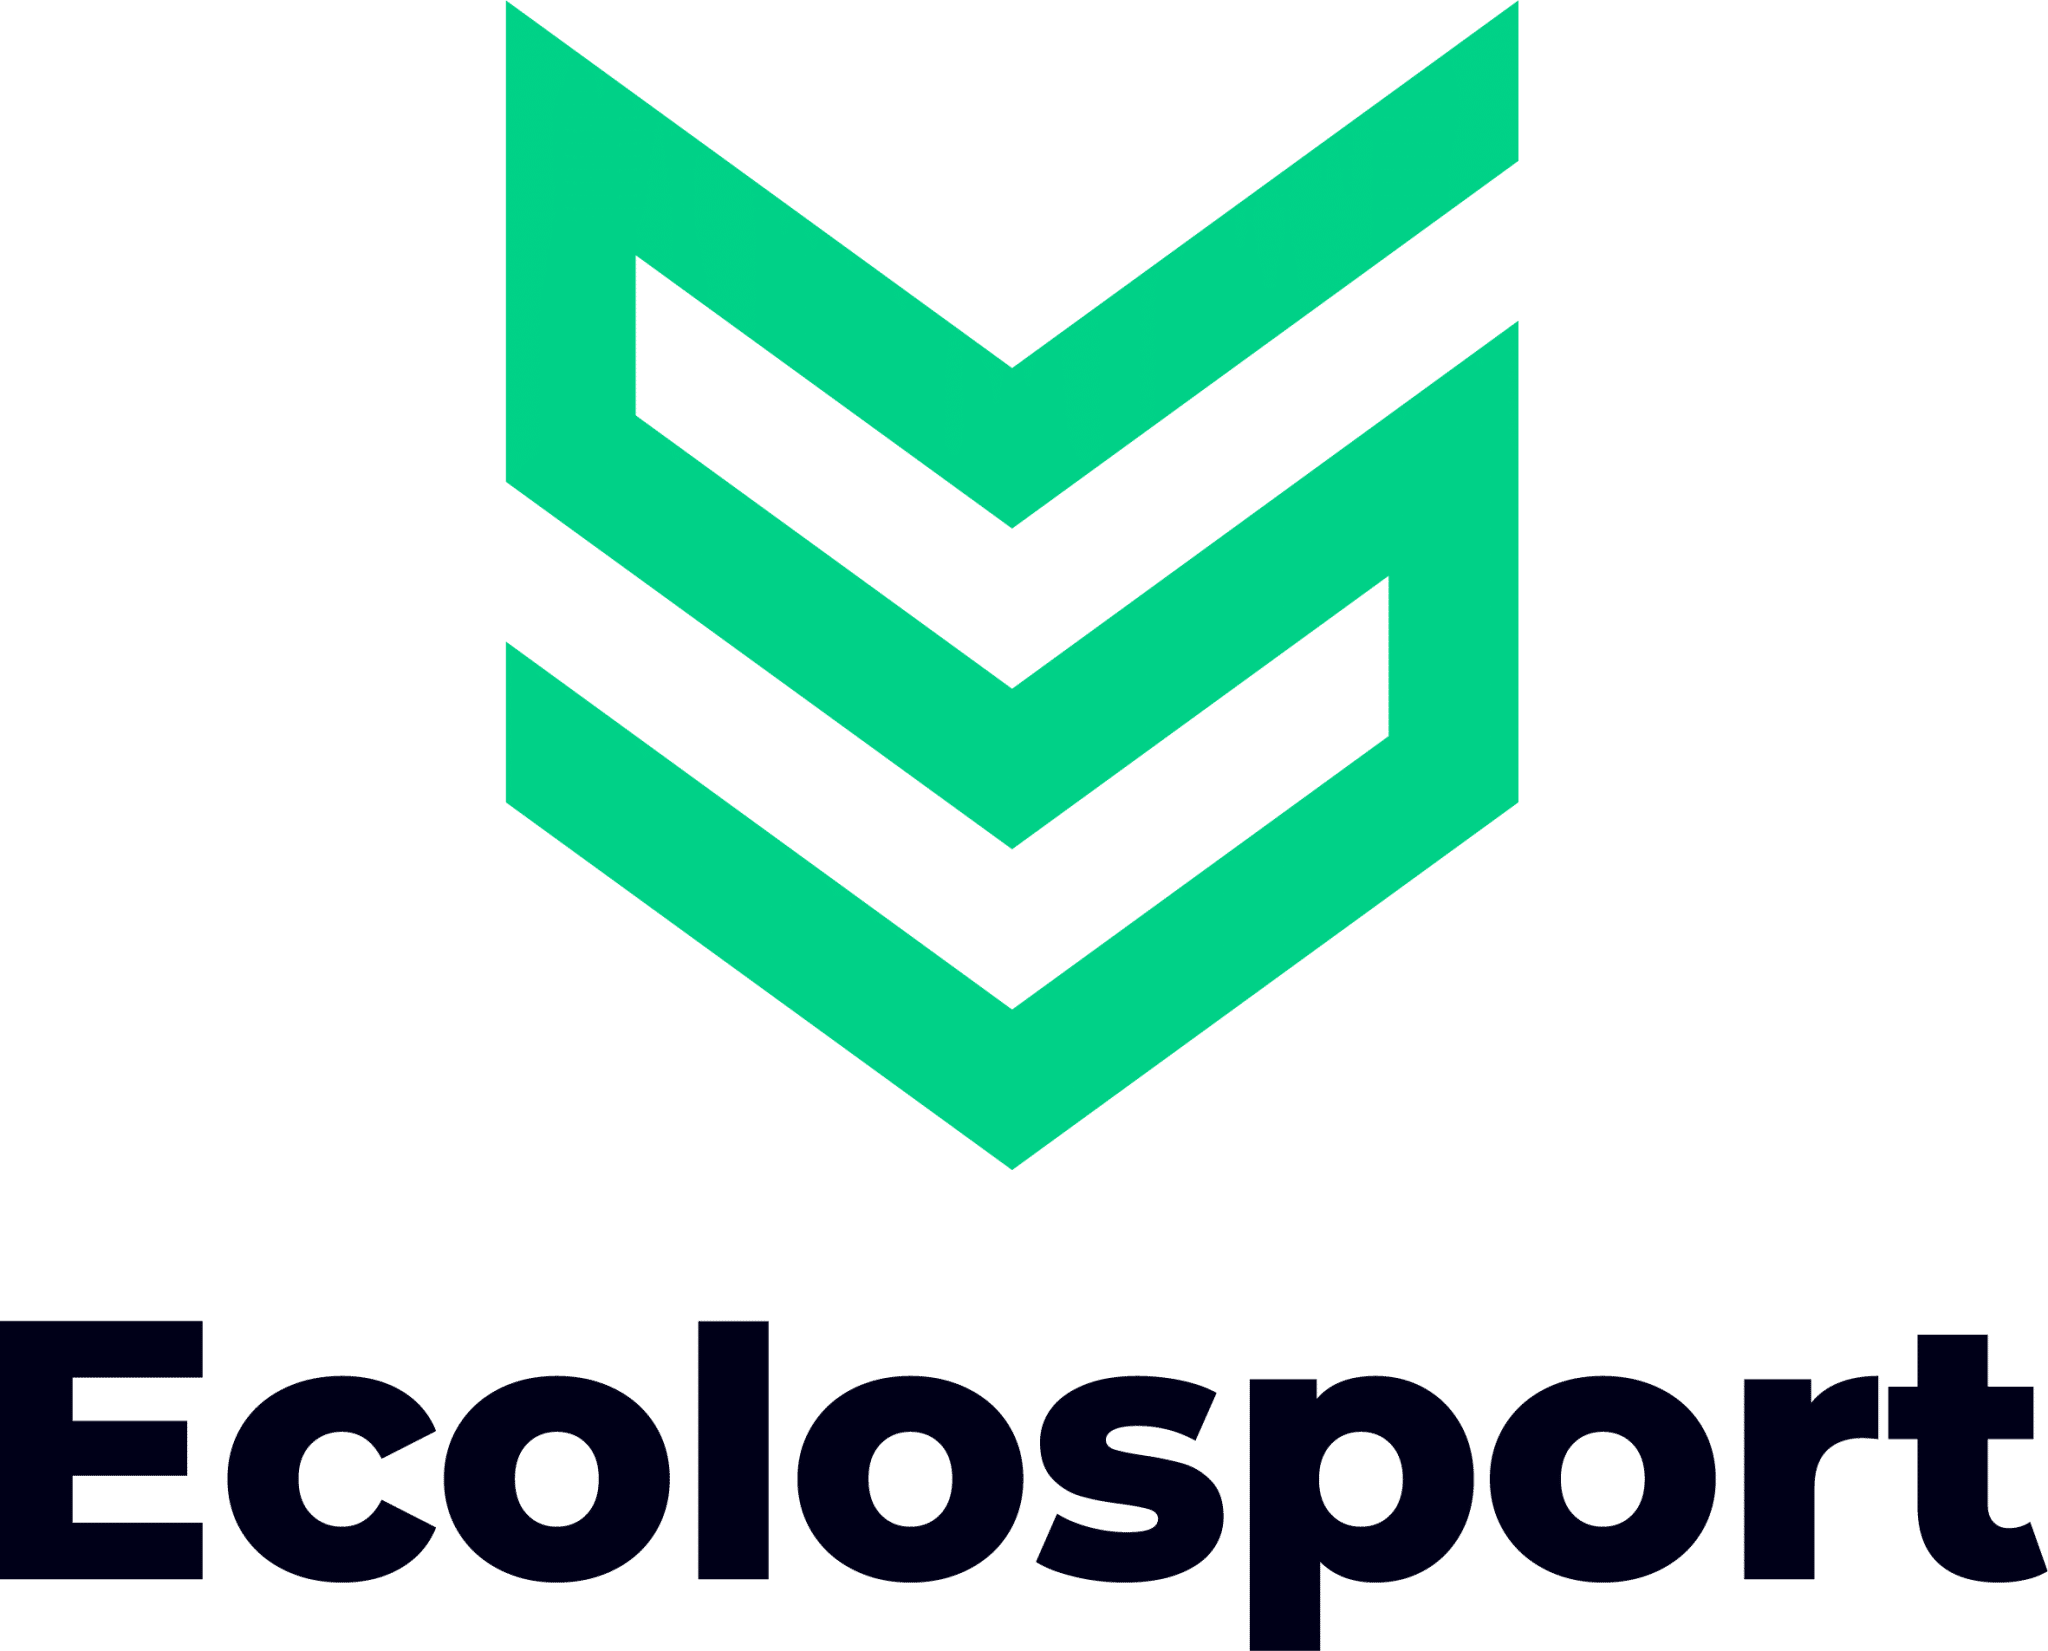 Ecolosport